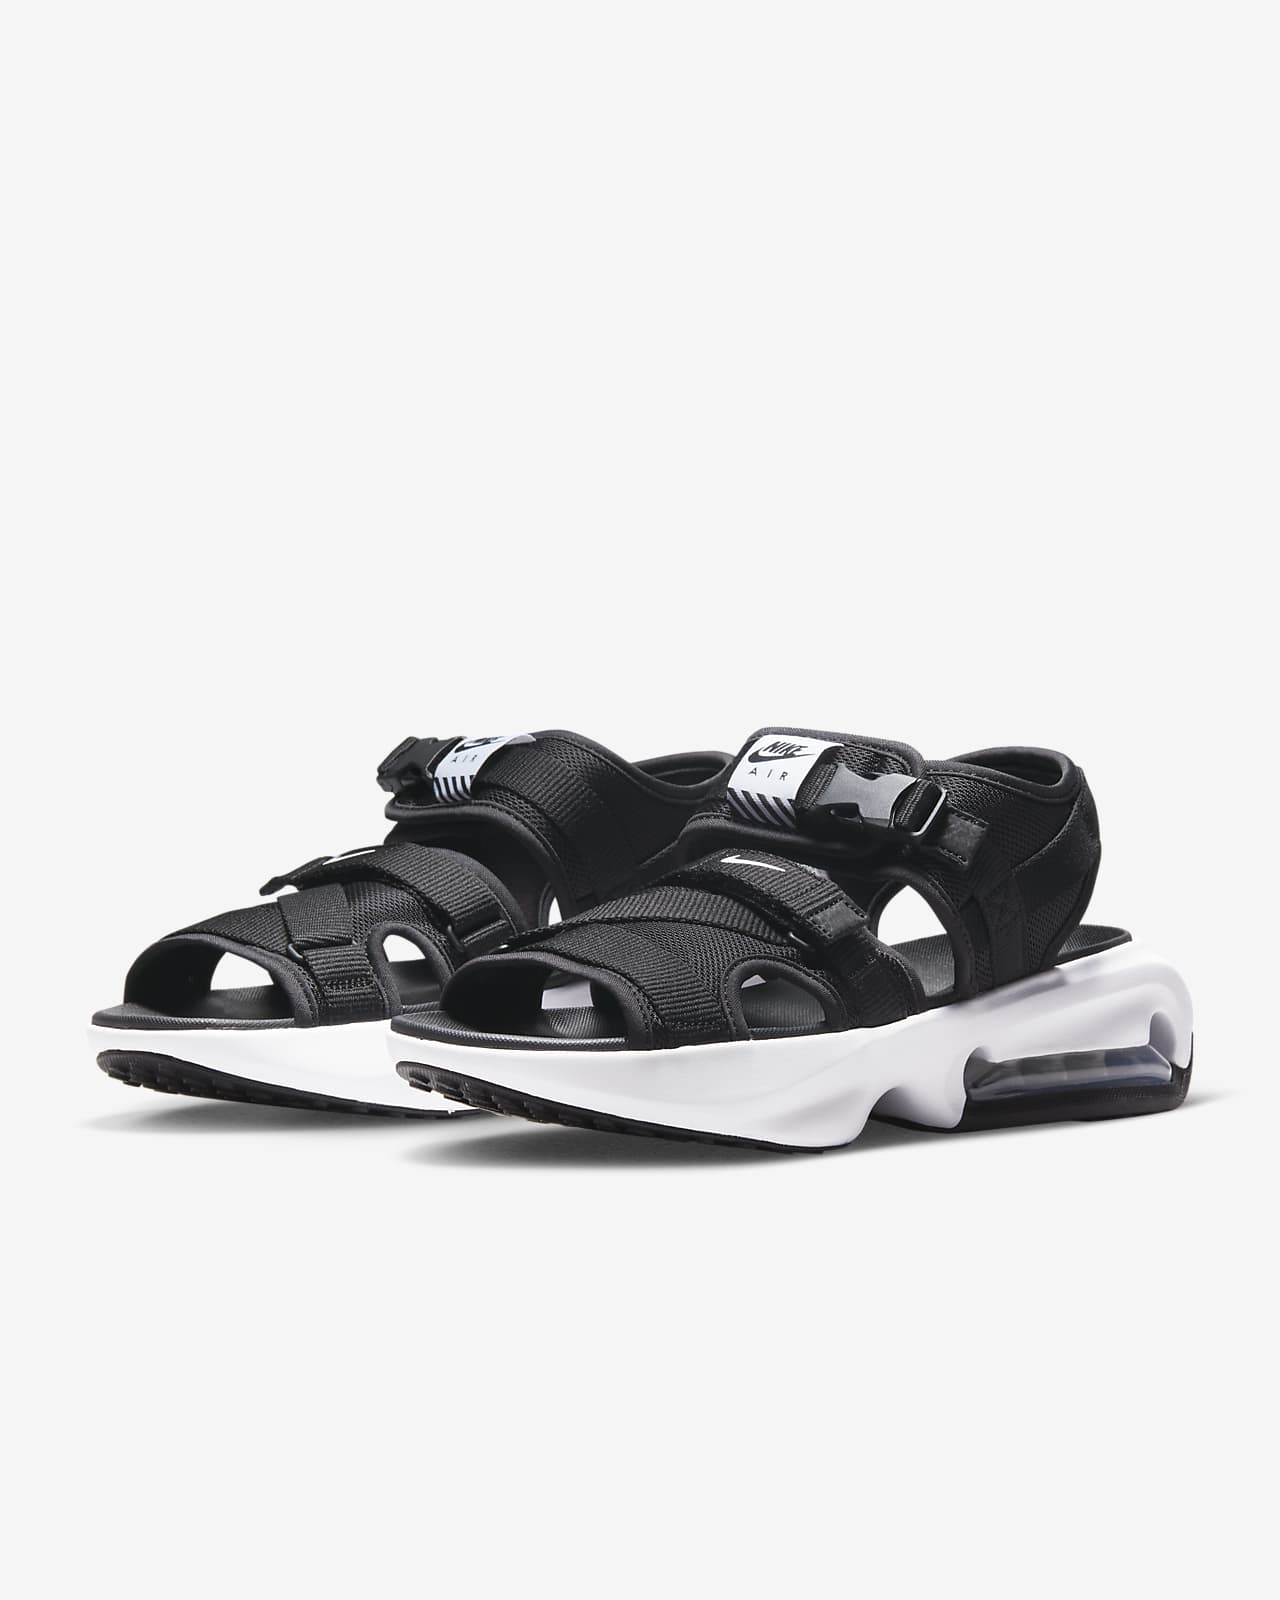 日本公式の通販 【新品未使用】エアマックスソル レディース26.0cm - 靴